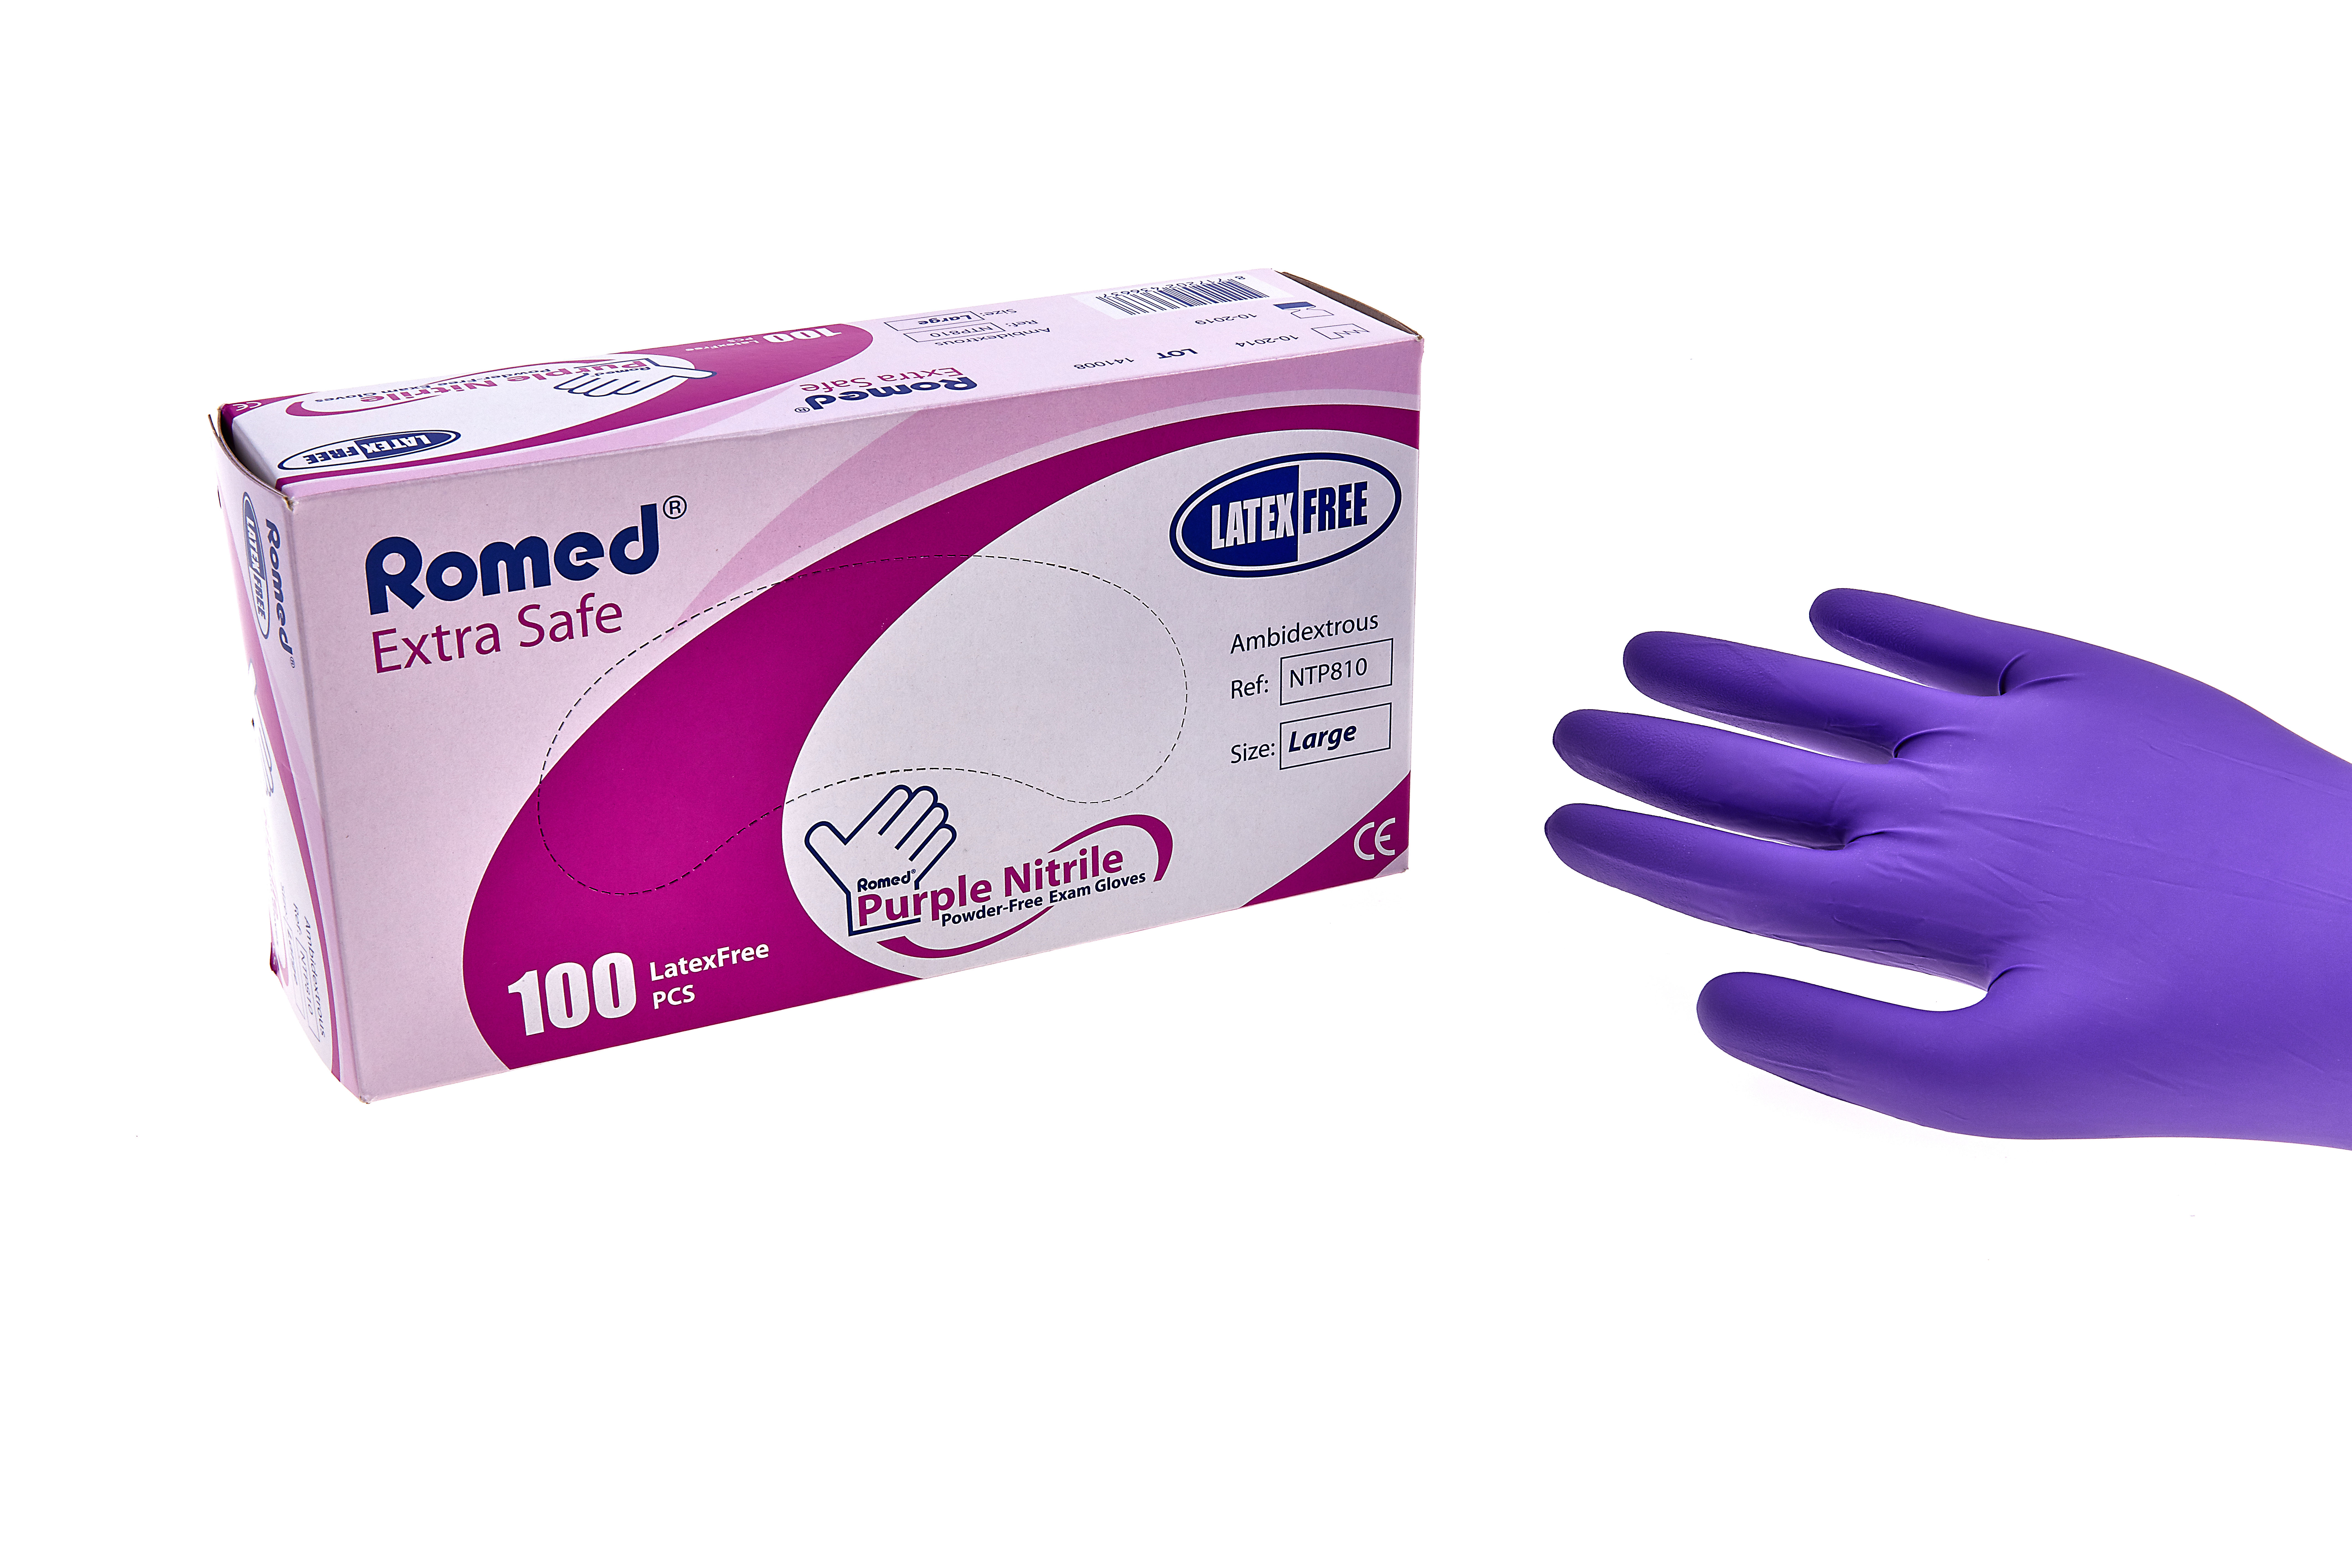 NTP800 Romed nitrile examination gloves, non sterile, powderfree, purple, small, per 100 pieces in a dispenser box, 10 x 100 pcs = 1.000 pcs in a carton.